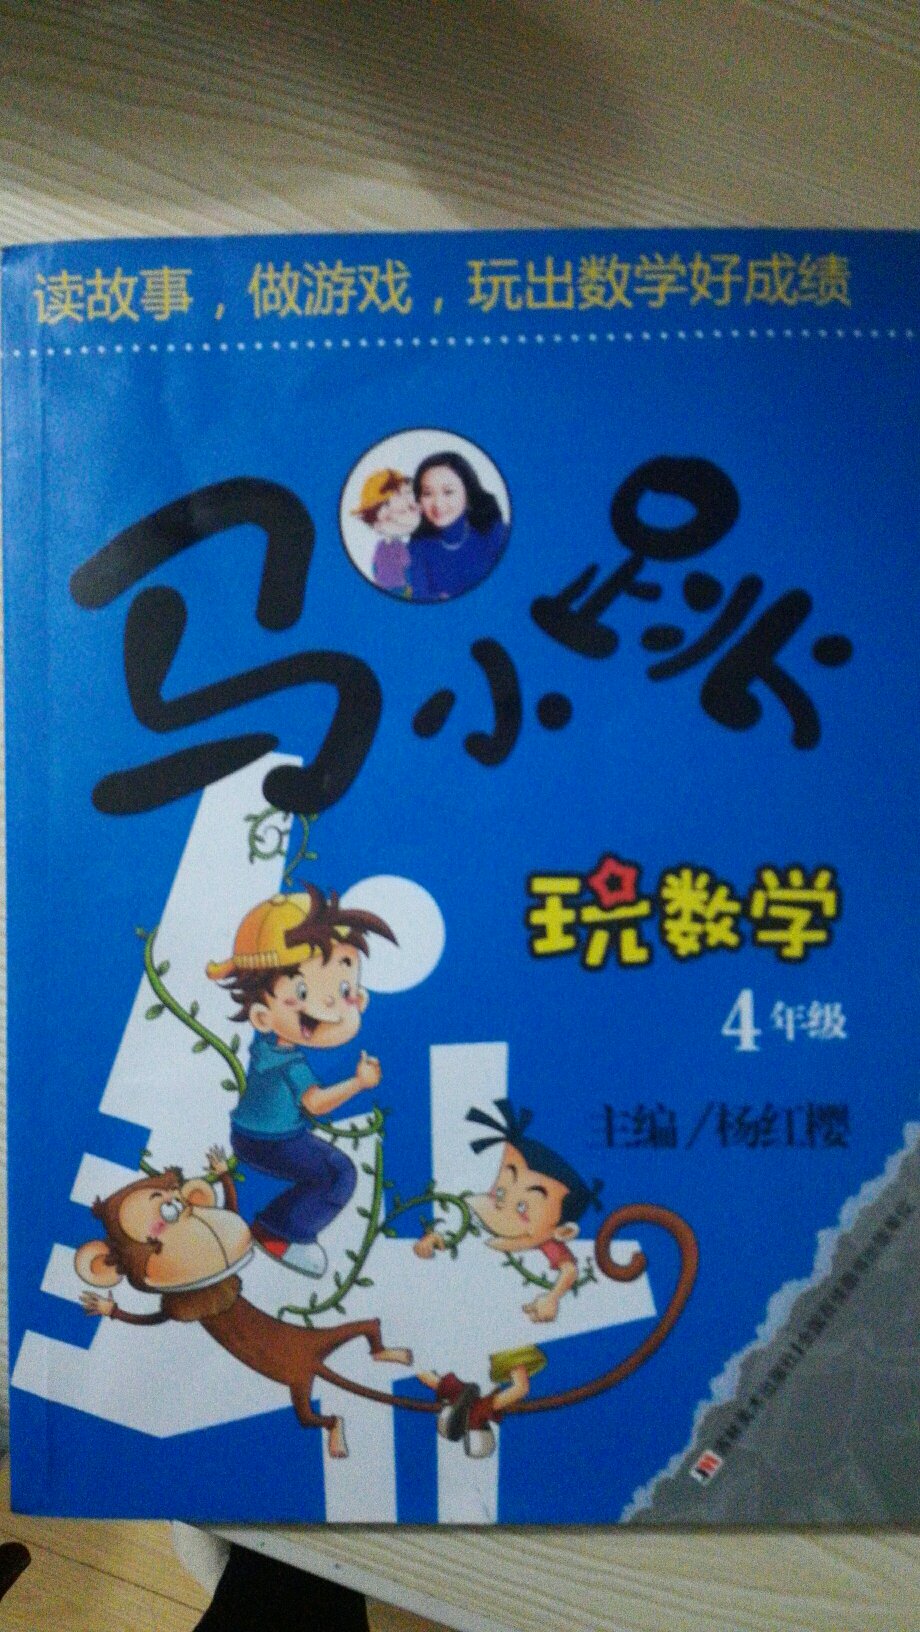 马小跳数学书不错，女儿非常喜欢！希望再有这样的好书，从而提高孩子们学习数学的兴趣！